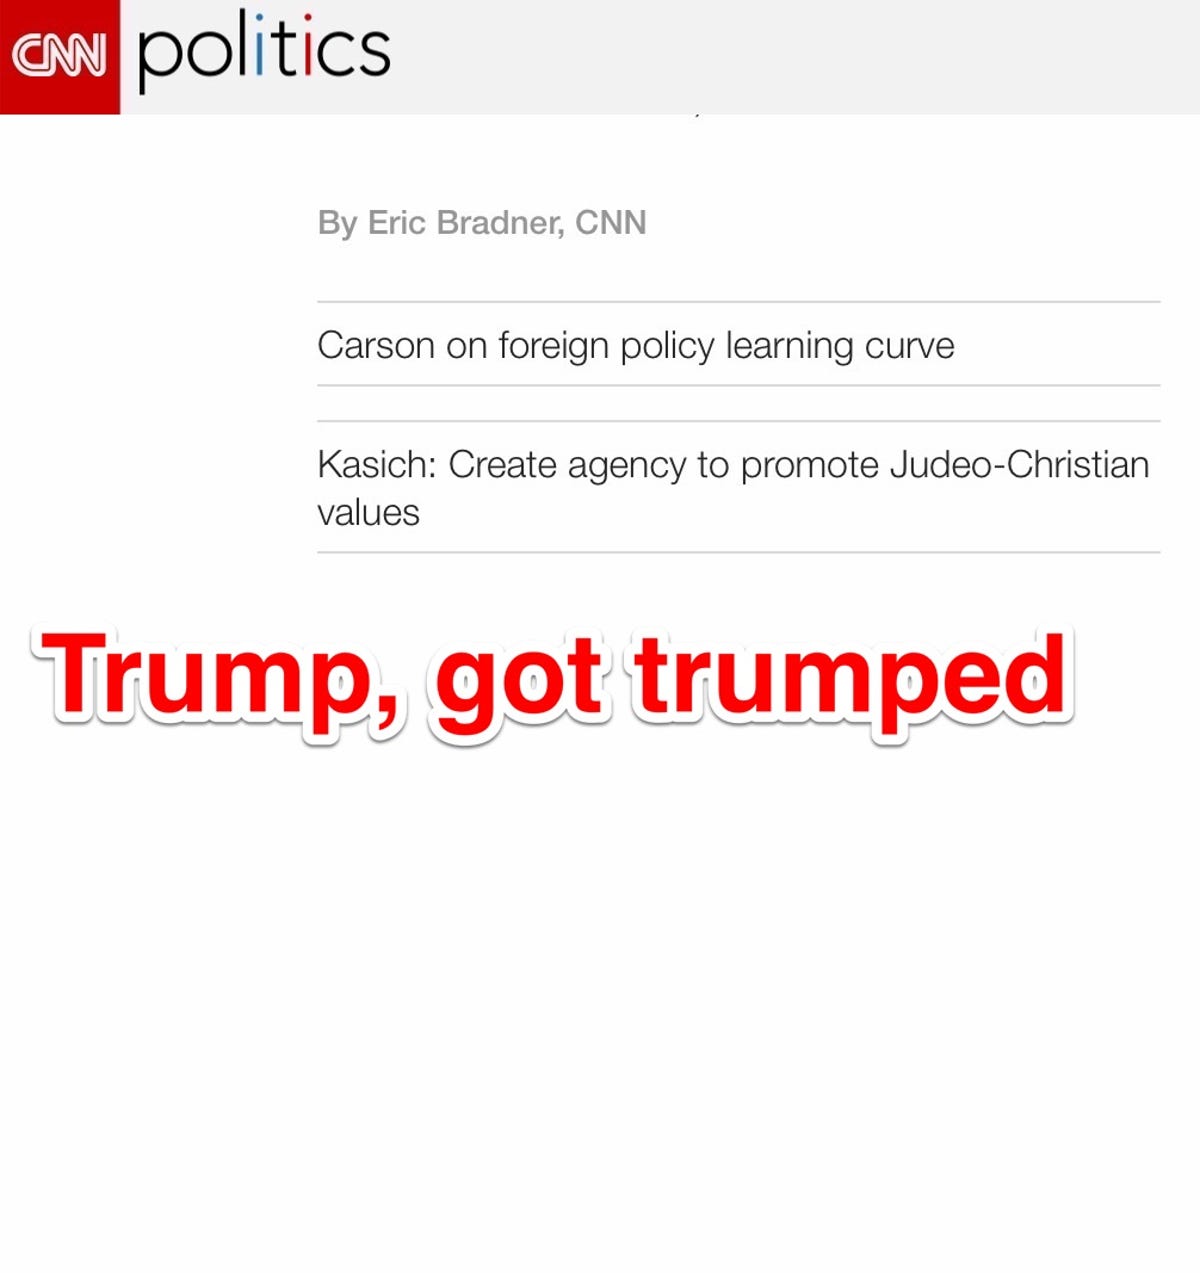 TrumpGotTrumped.jpg